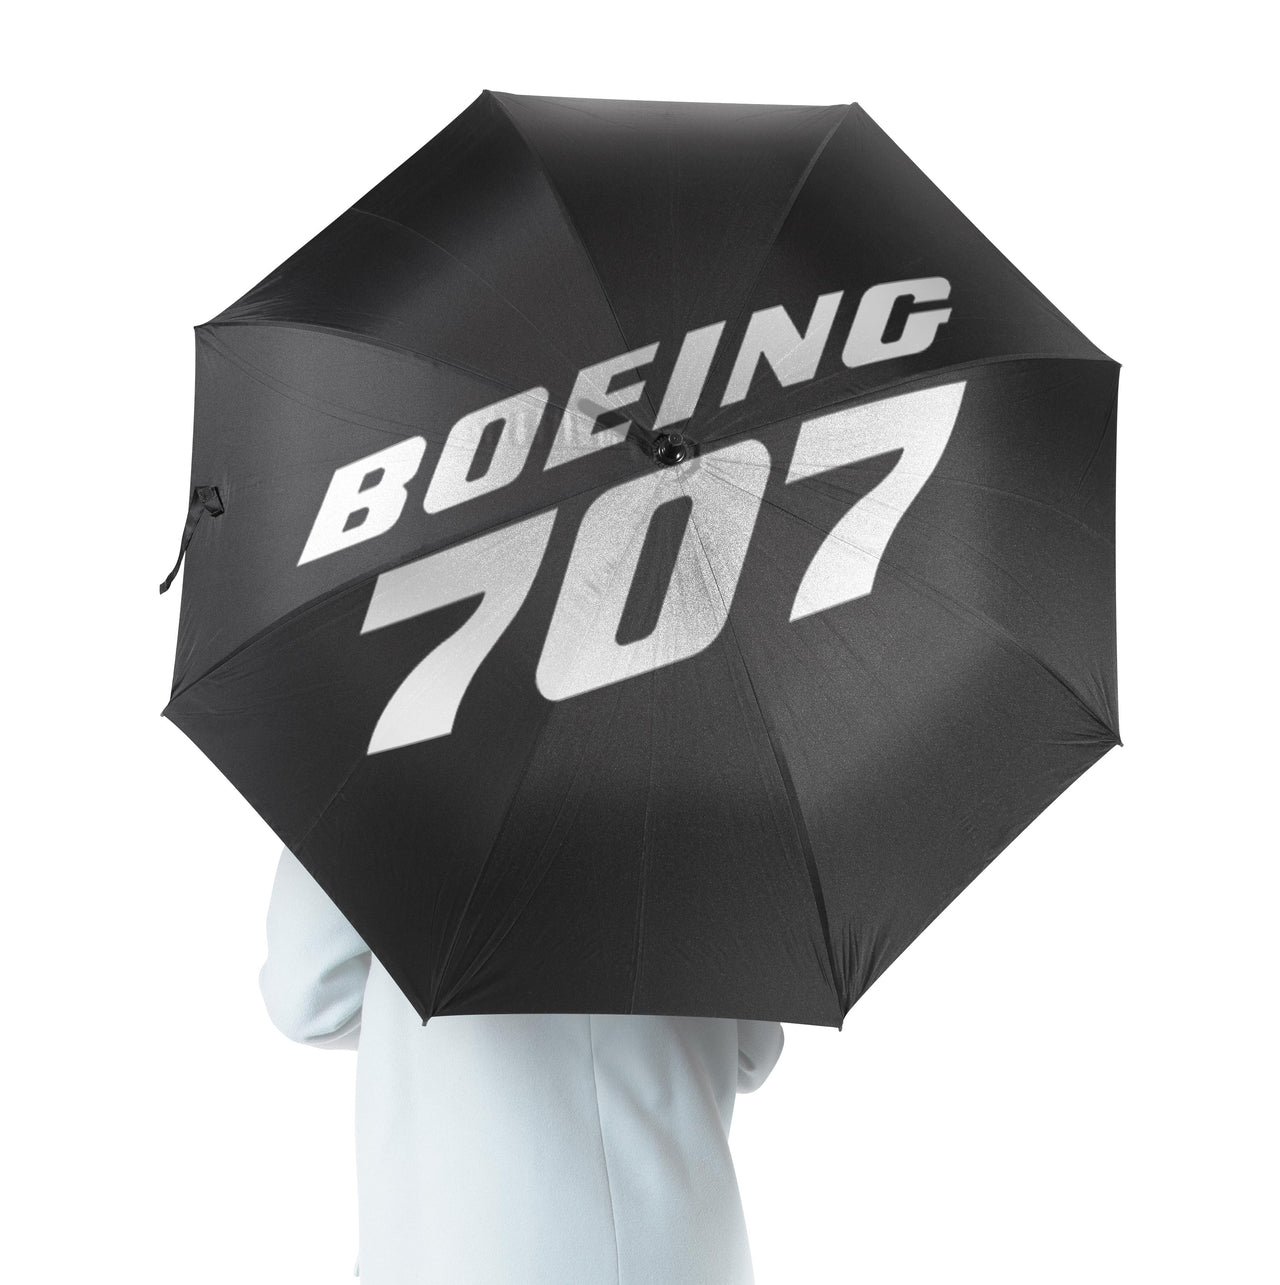 Boeing 707 & Text Designed Umbrella